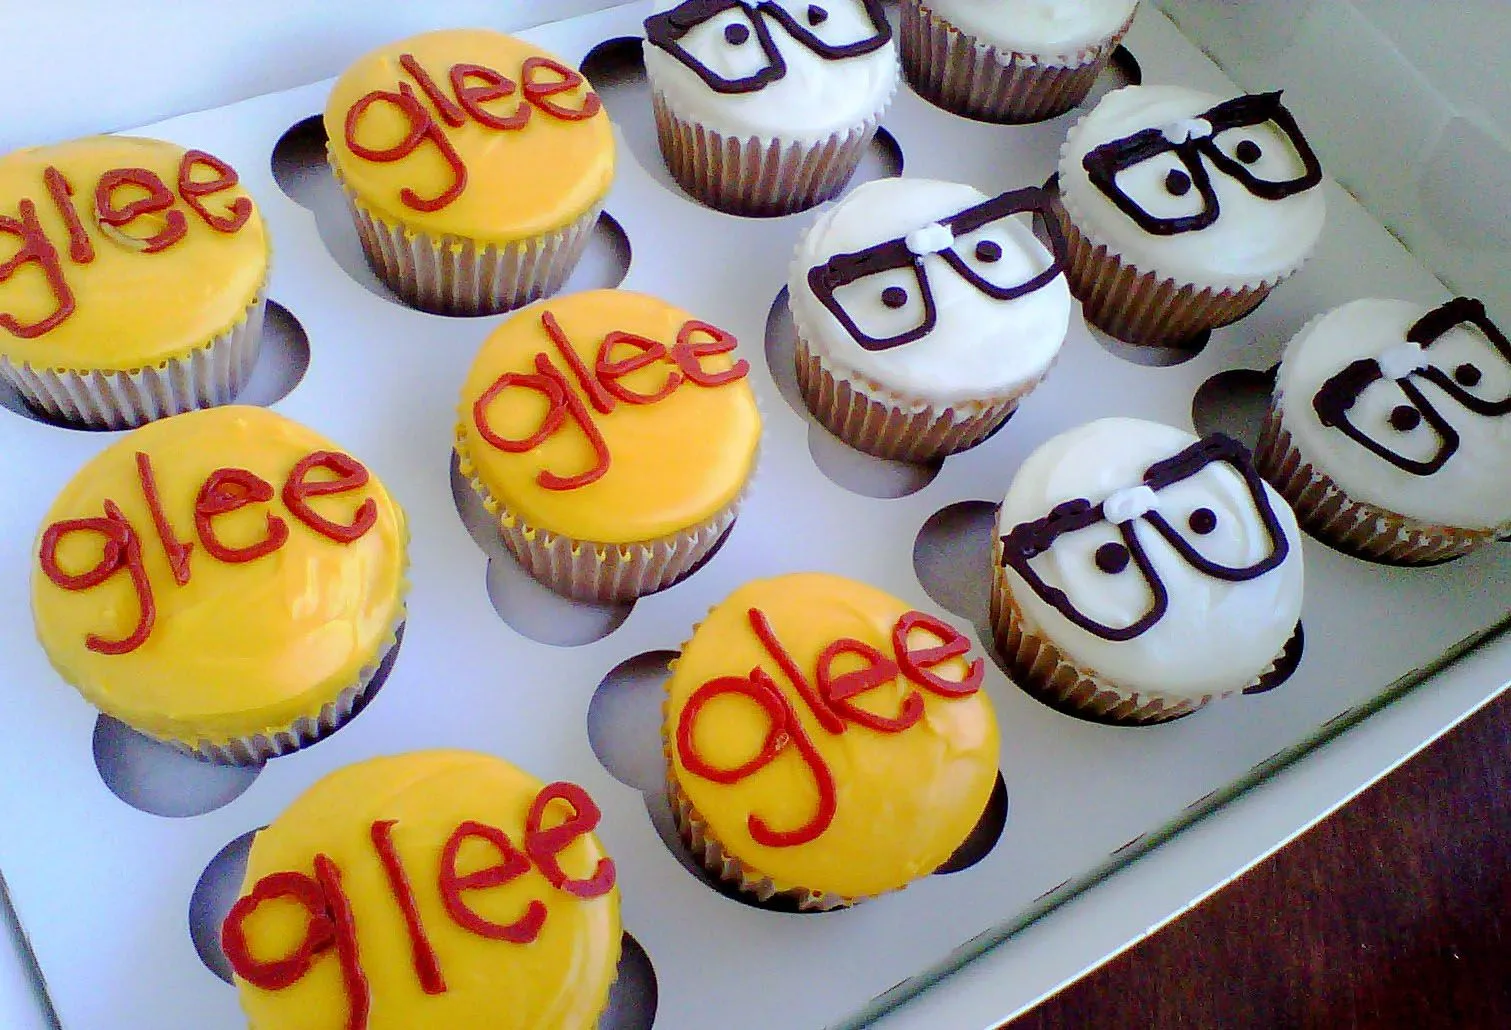 Glee Cupcakes | Flickr - Photo Sharing!